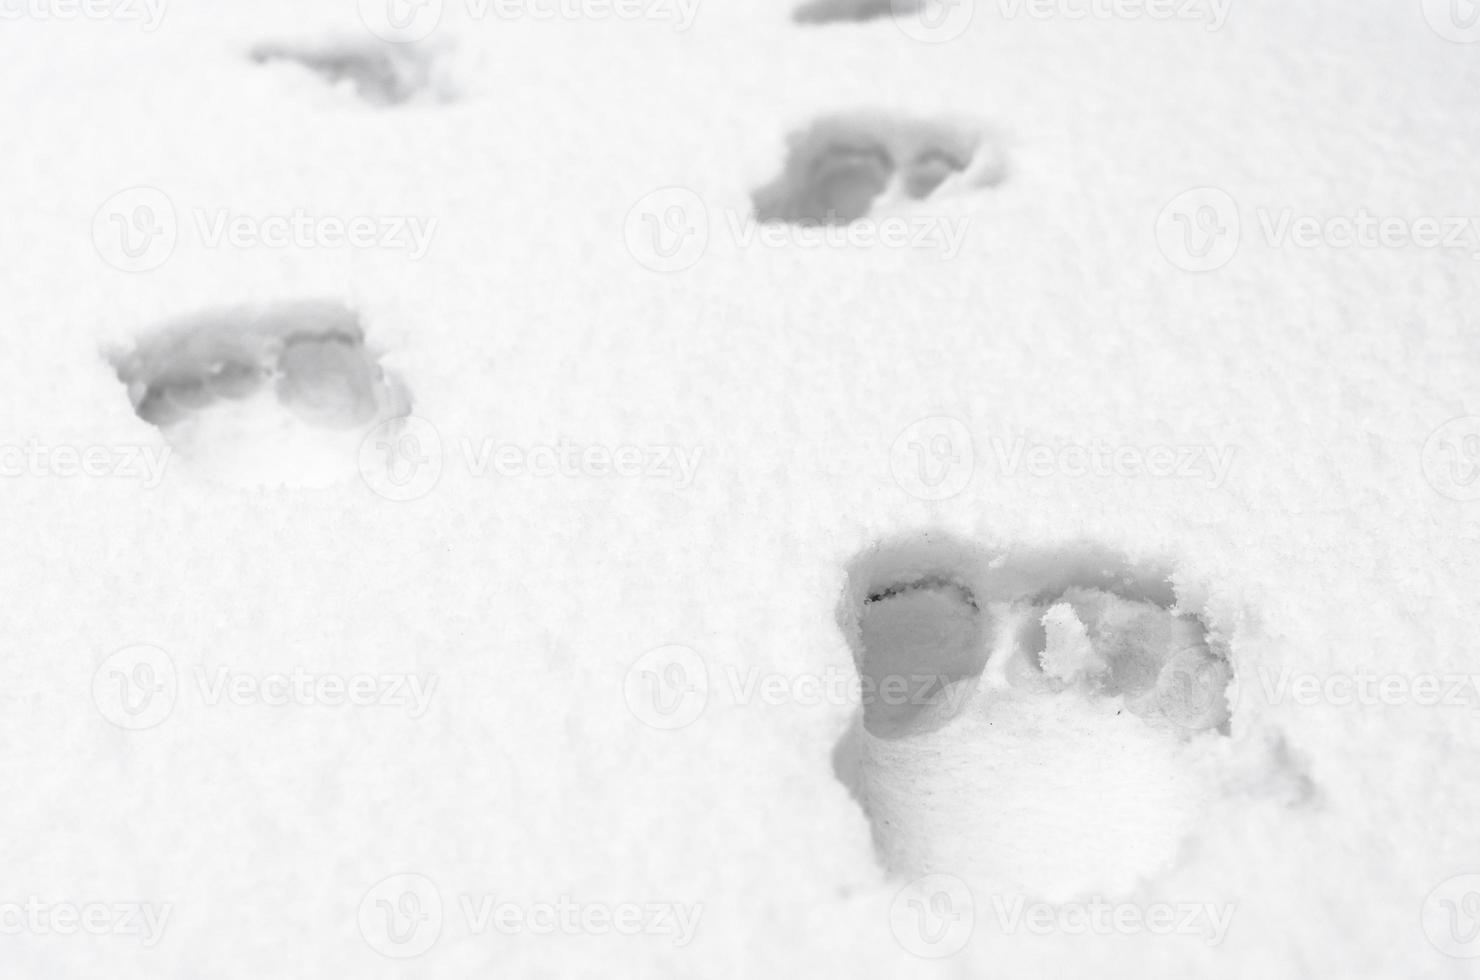 fußspuren von nackten menschlichen füßen auf weißem schnee hautnah foto